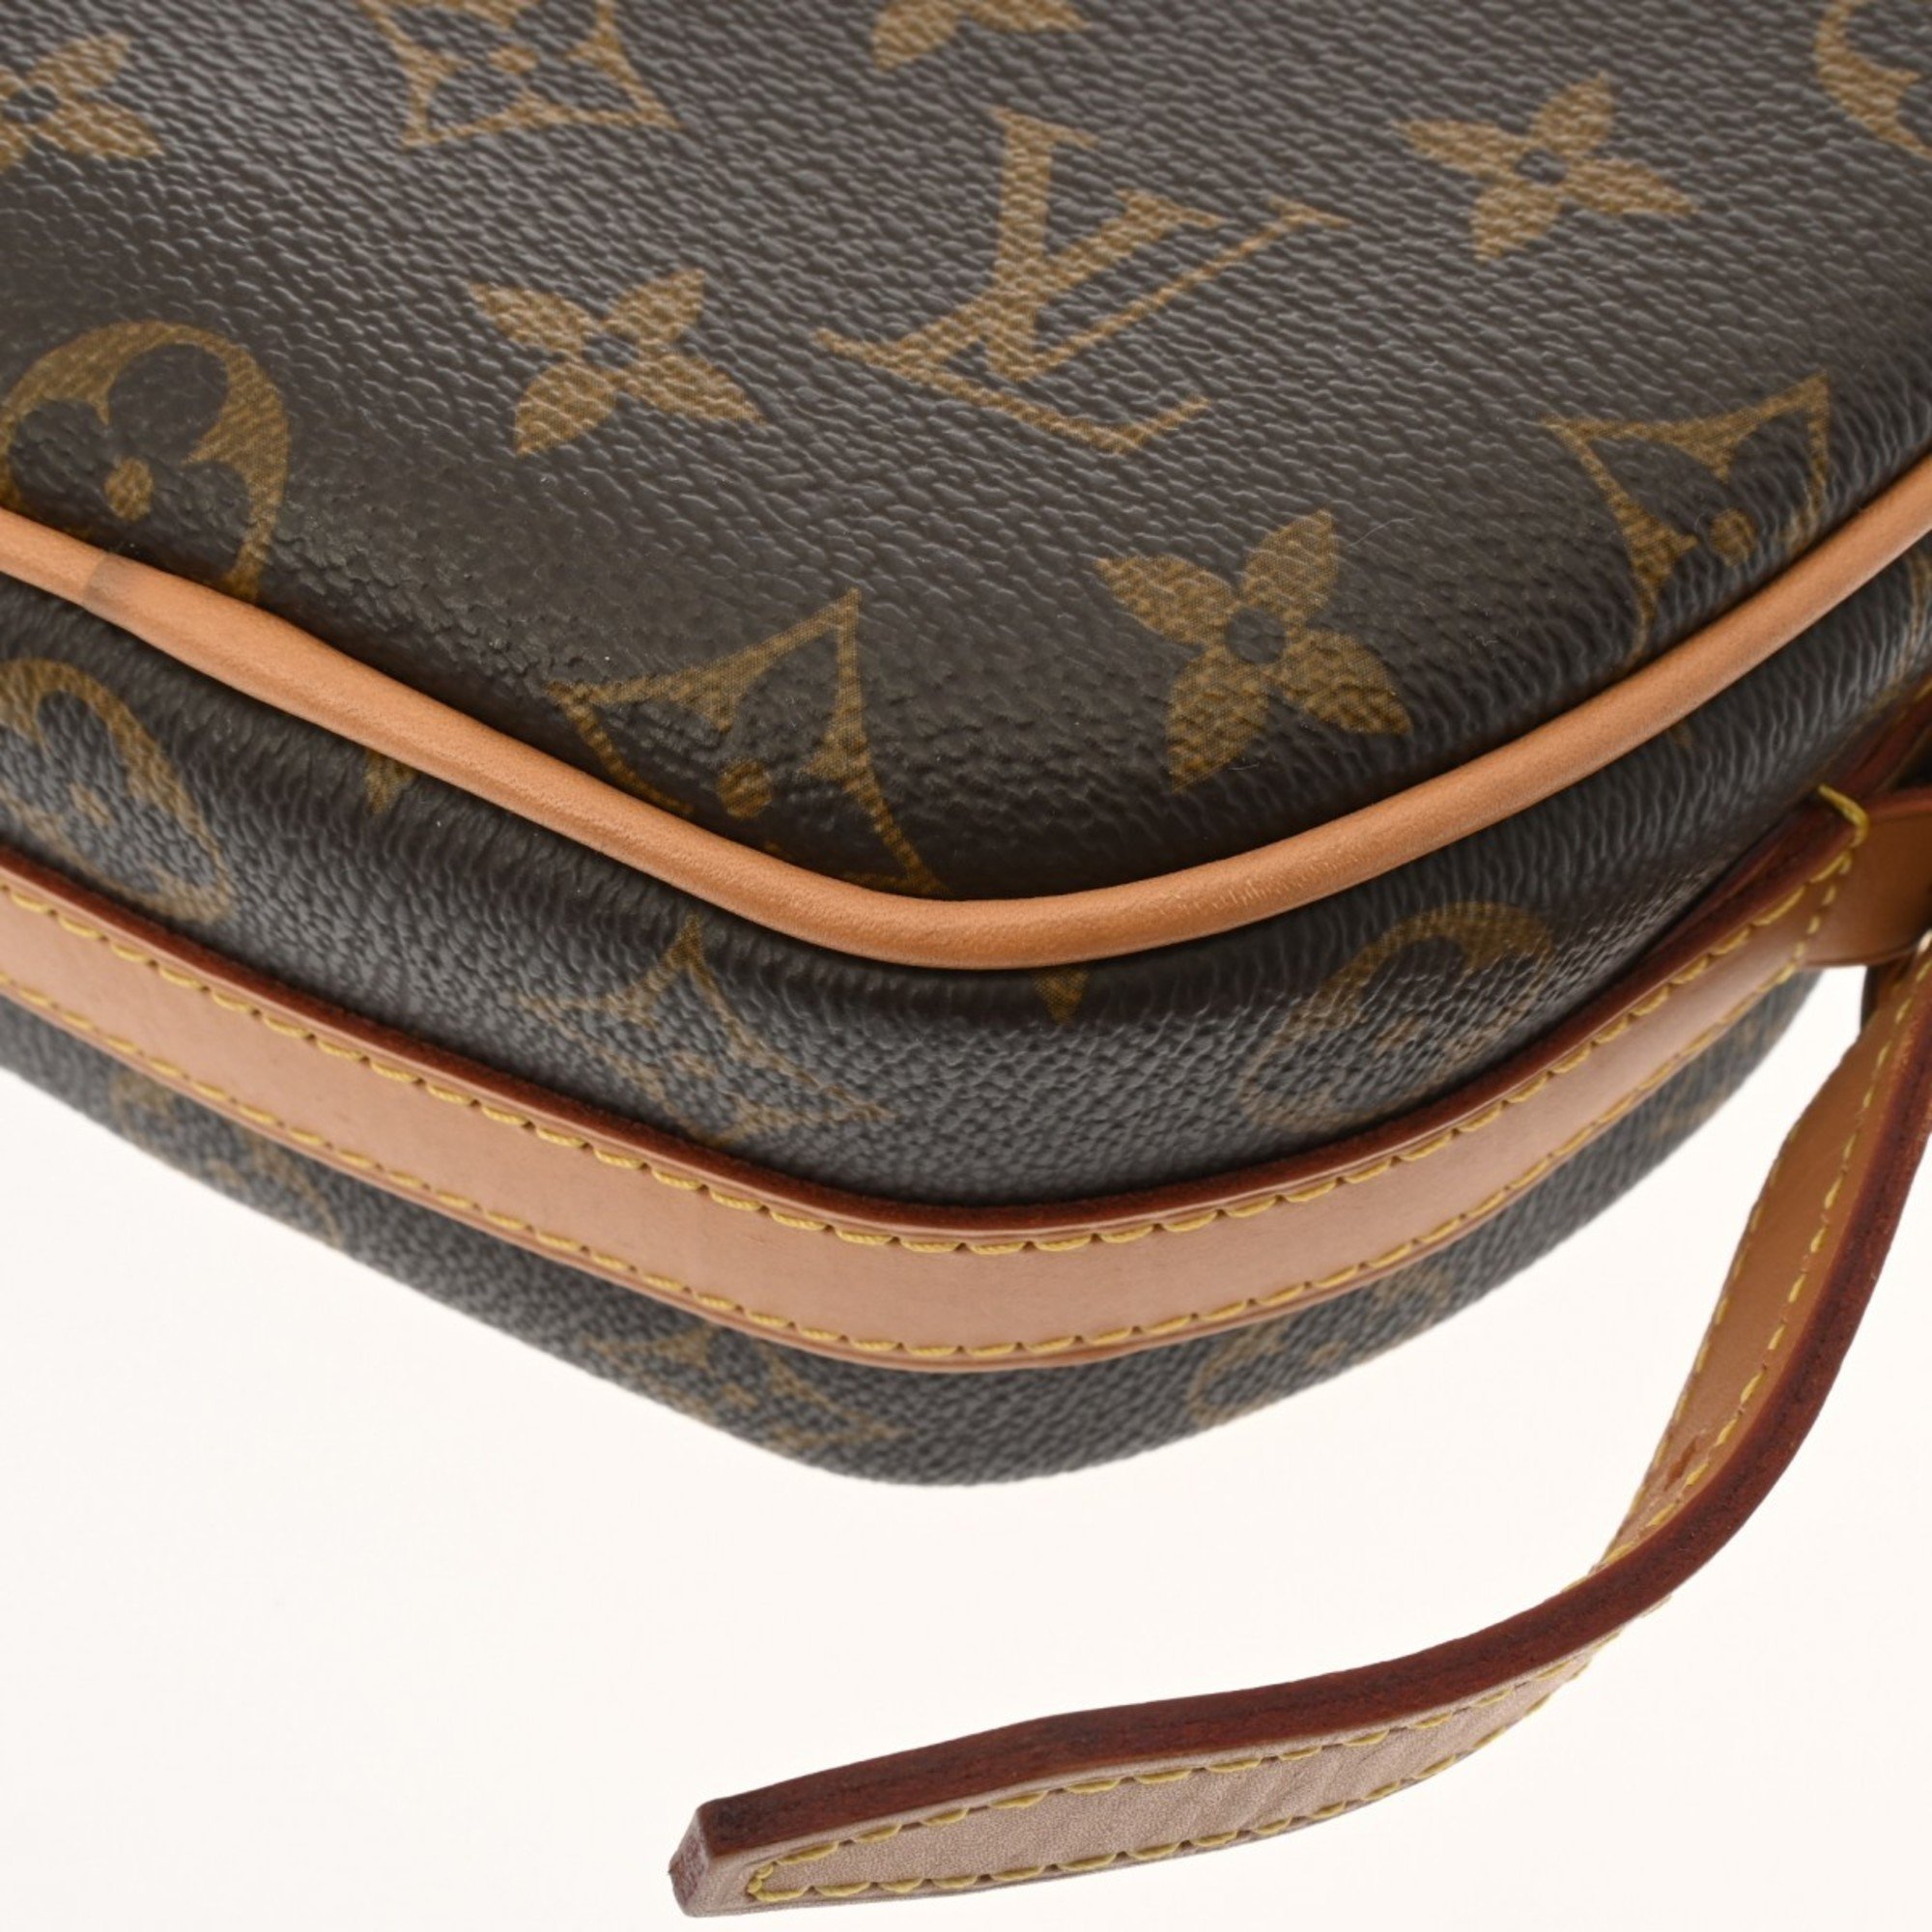 LOUIS VUITTON Louis Vuitton Monogram Boite Chapeau Souple Brown M45578 Women's Canvas Shoulder Bag